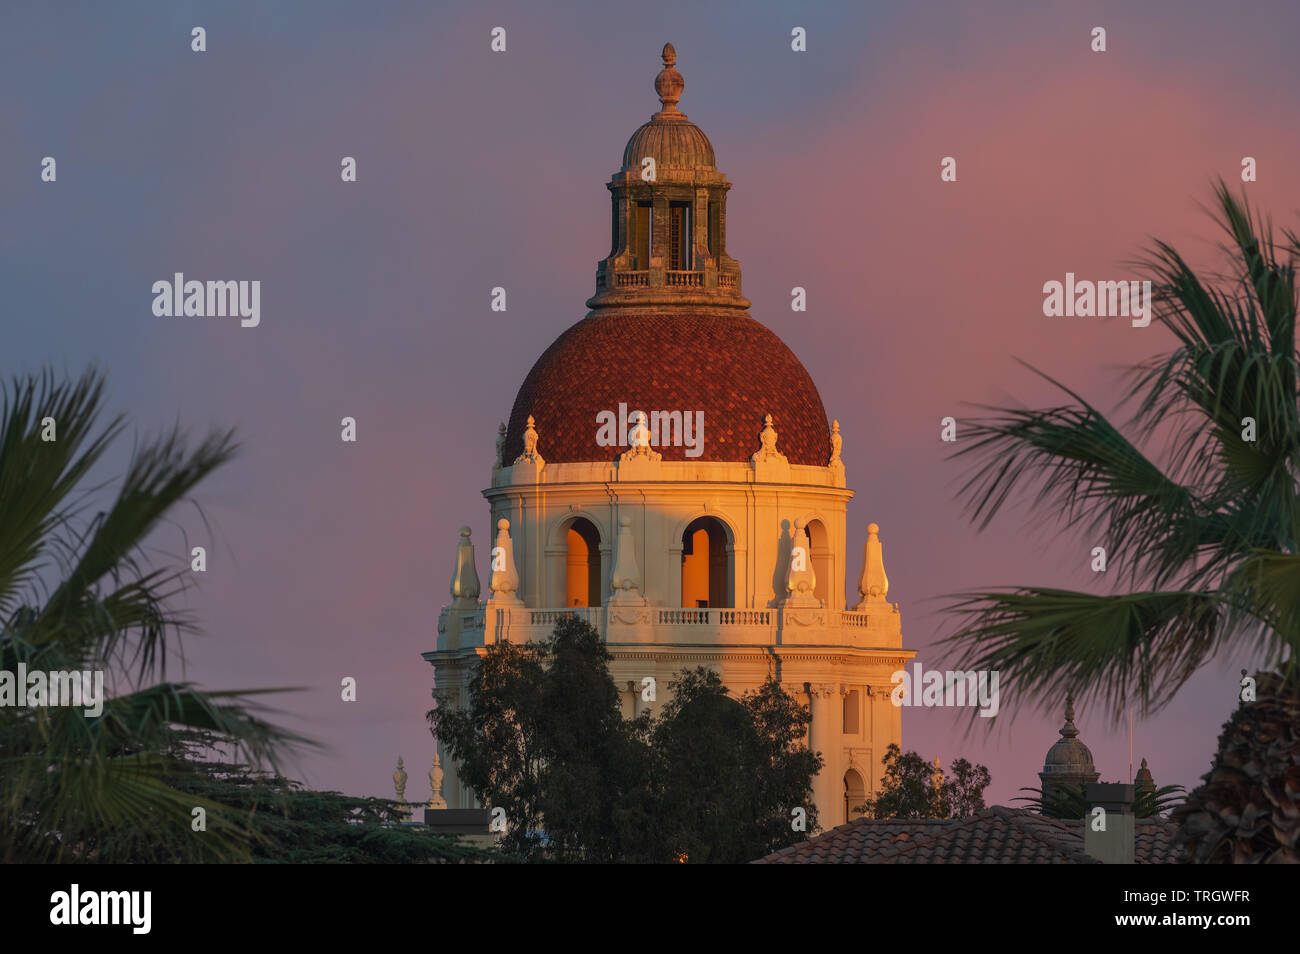 La tour principale de l'Hôtel de Ville de Pasadena contre belle lumière dorée. Pasadena est situé dans le comté de Los Angeles en Californie. Banque D'Images